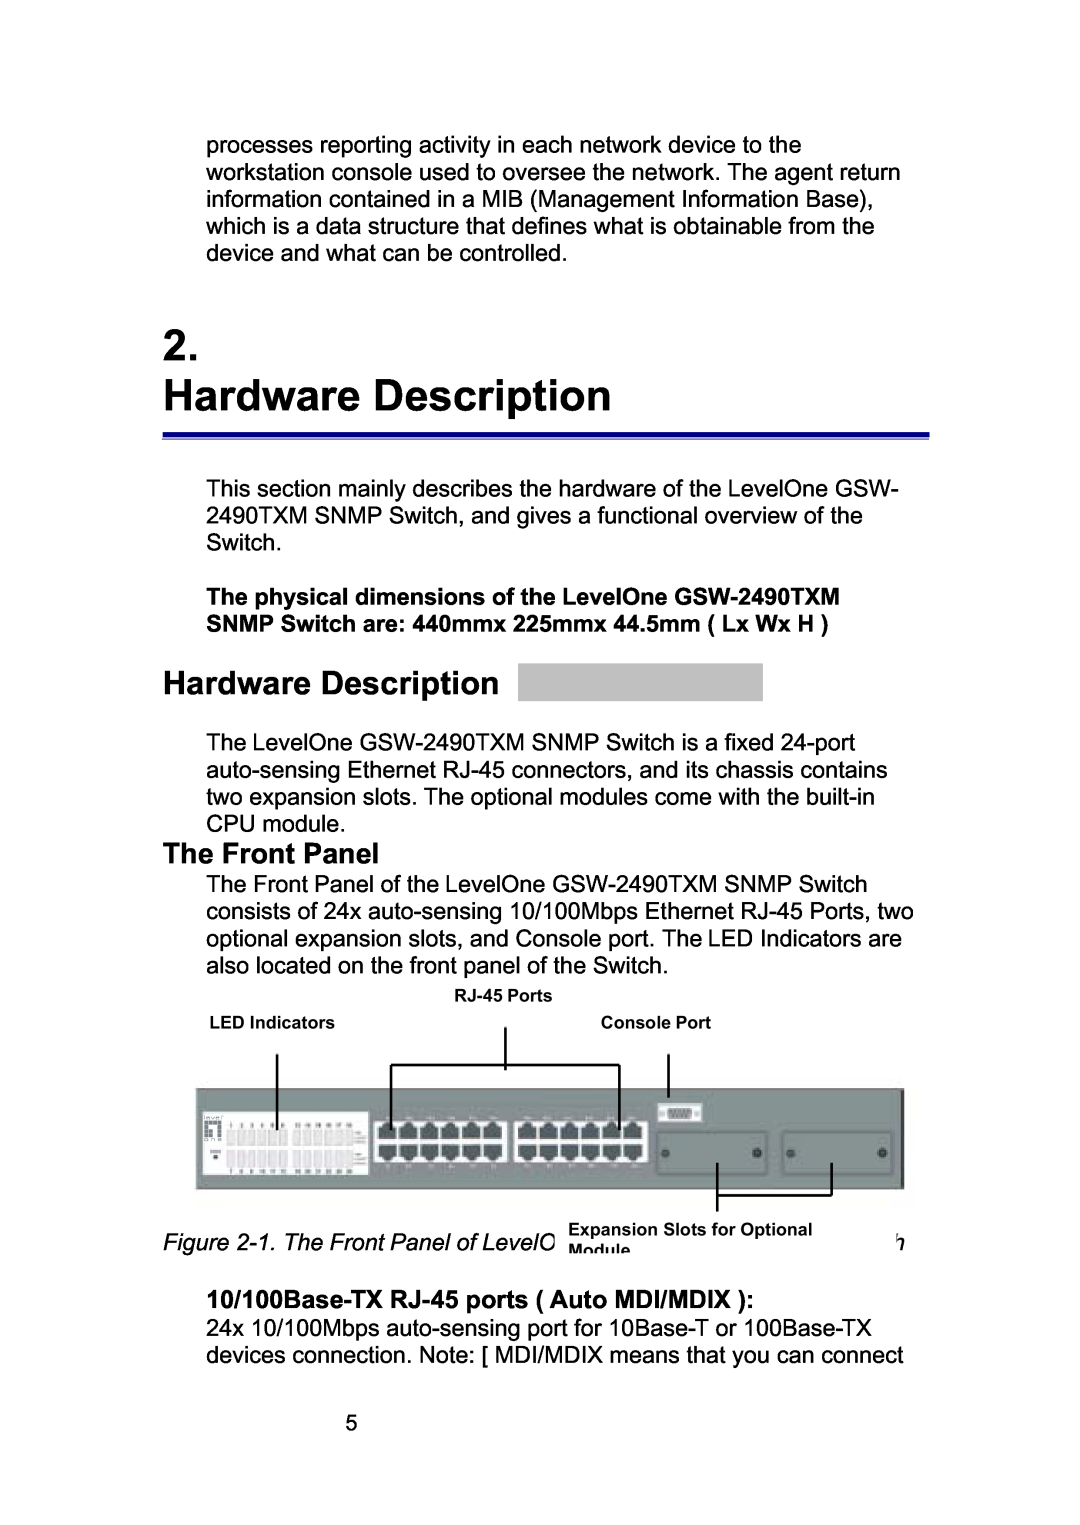 LevelOne GSW-2490TXM manual Hardware Description, The Front Panel, 10/100Base-TX RJ-45 ports Auto MDI/MDIX 